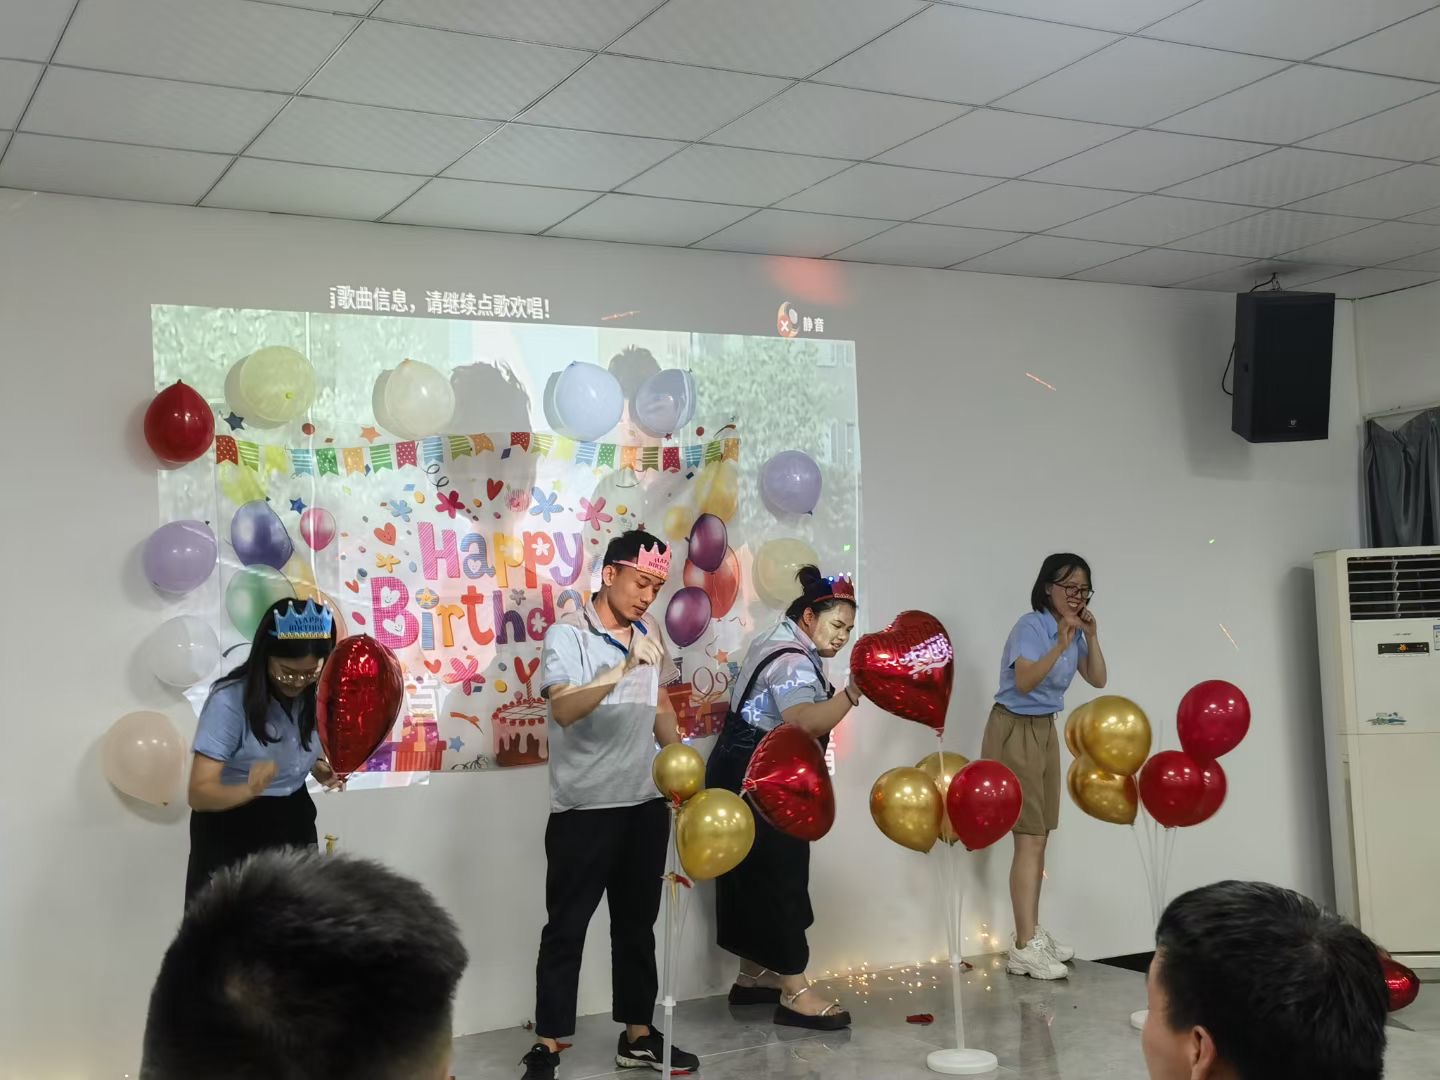 कंपनी कर्मचारियों का जन्मदिन मौज-मस्ती और खेलों के साथ मनाती है